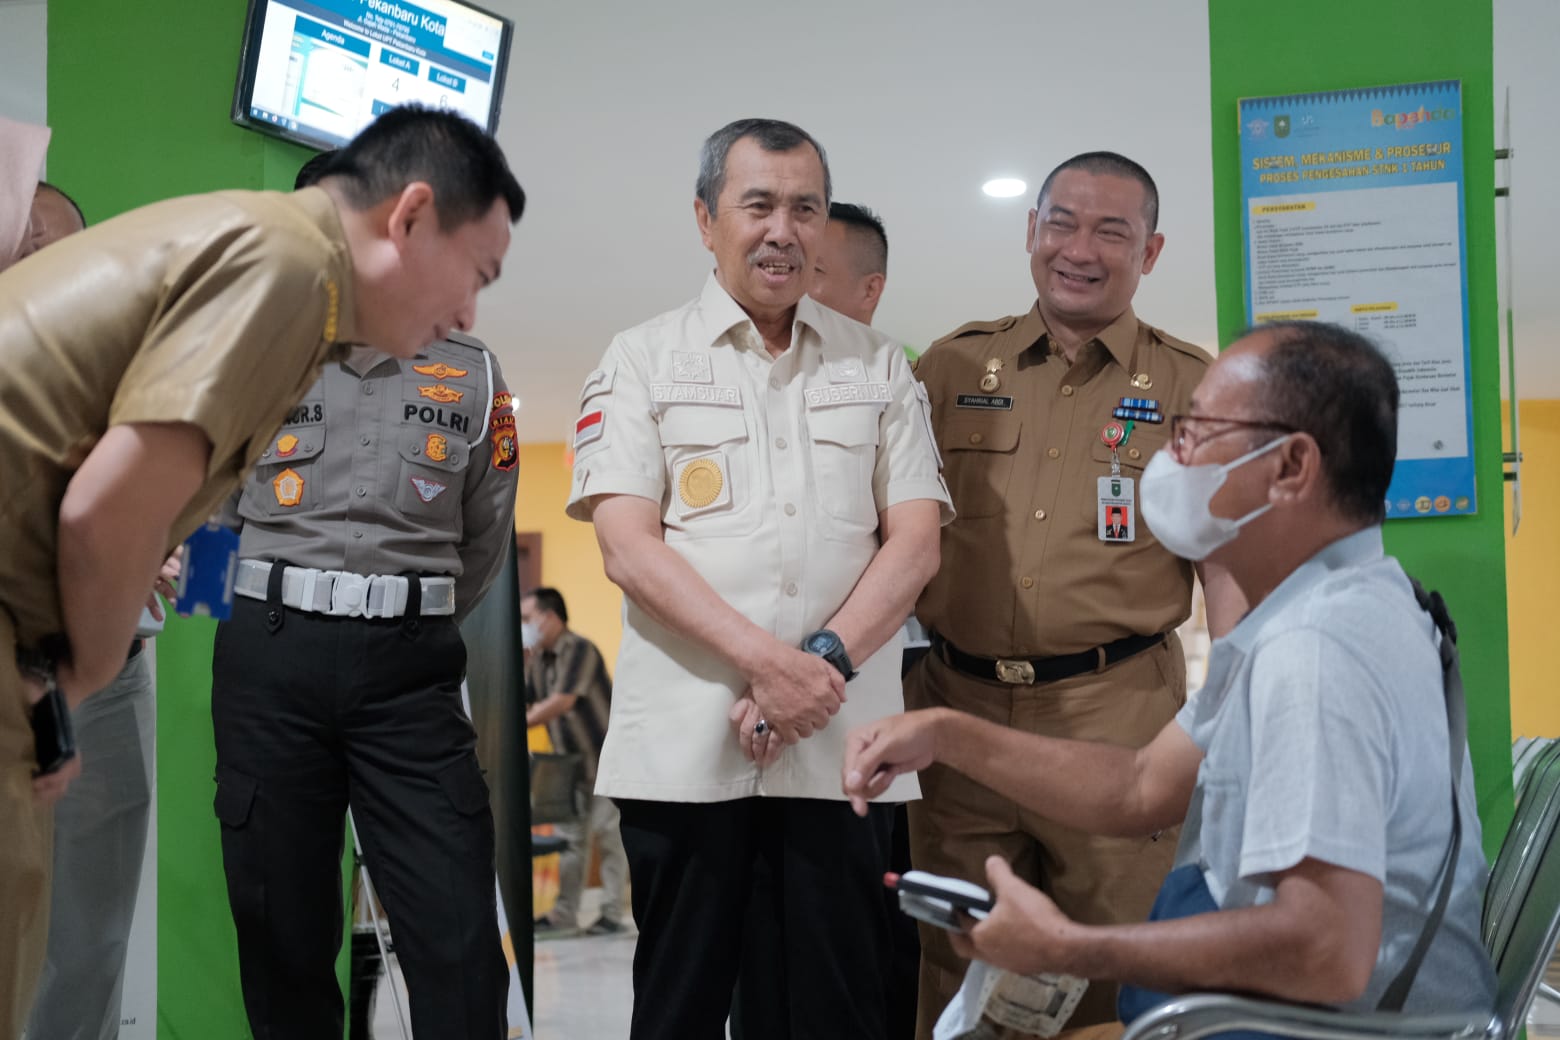 Pelayanan maksimal yang diberikan pada wajib pajak oleh pejabat Pemprov Riau